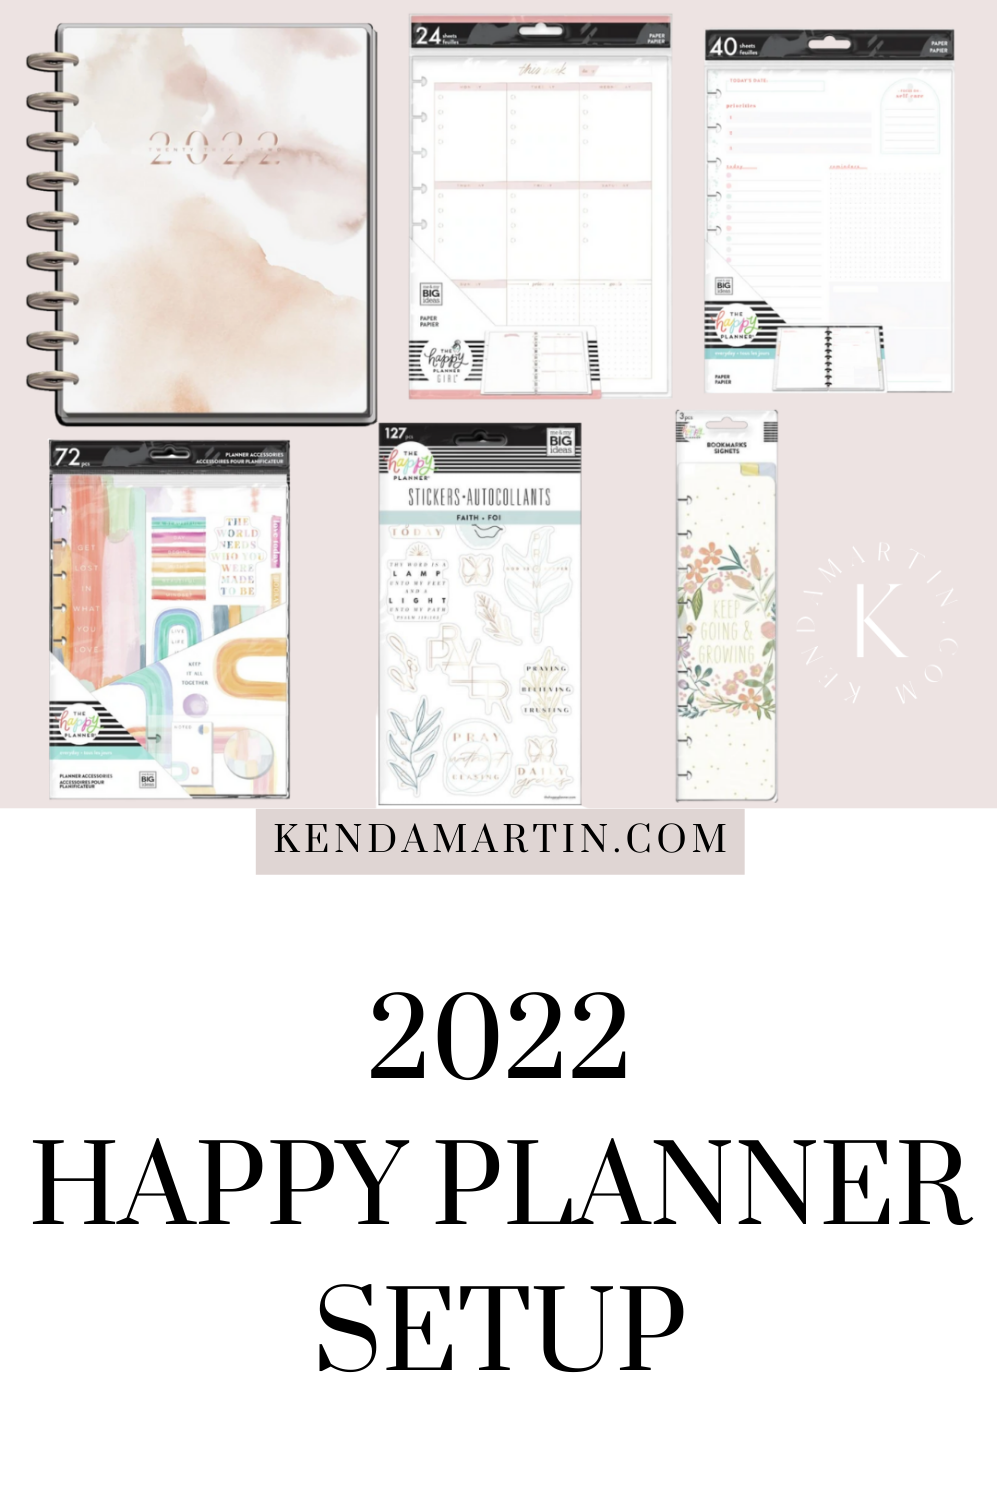 https://kendamartin.com/wp-content/uploads/2021/12/Happy-Planner-Setup.png